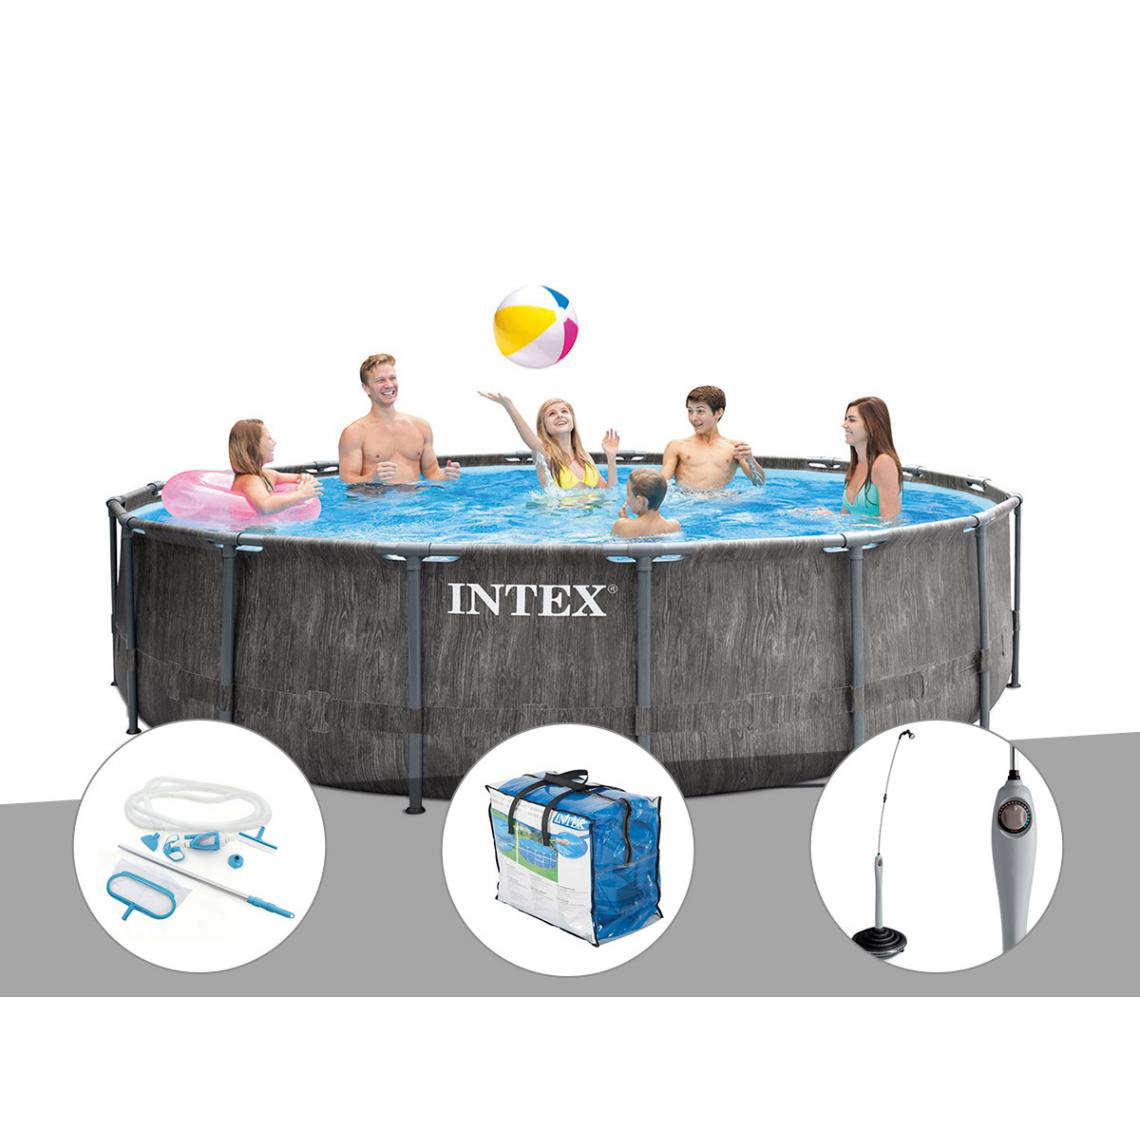 Intex - Kit piscine tubulaire Intex Baltik ronde 5,49 x 1,22 m + Kit d'entretien + Bâche à bulles + Douche solaire - Piscine Tubulaire